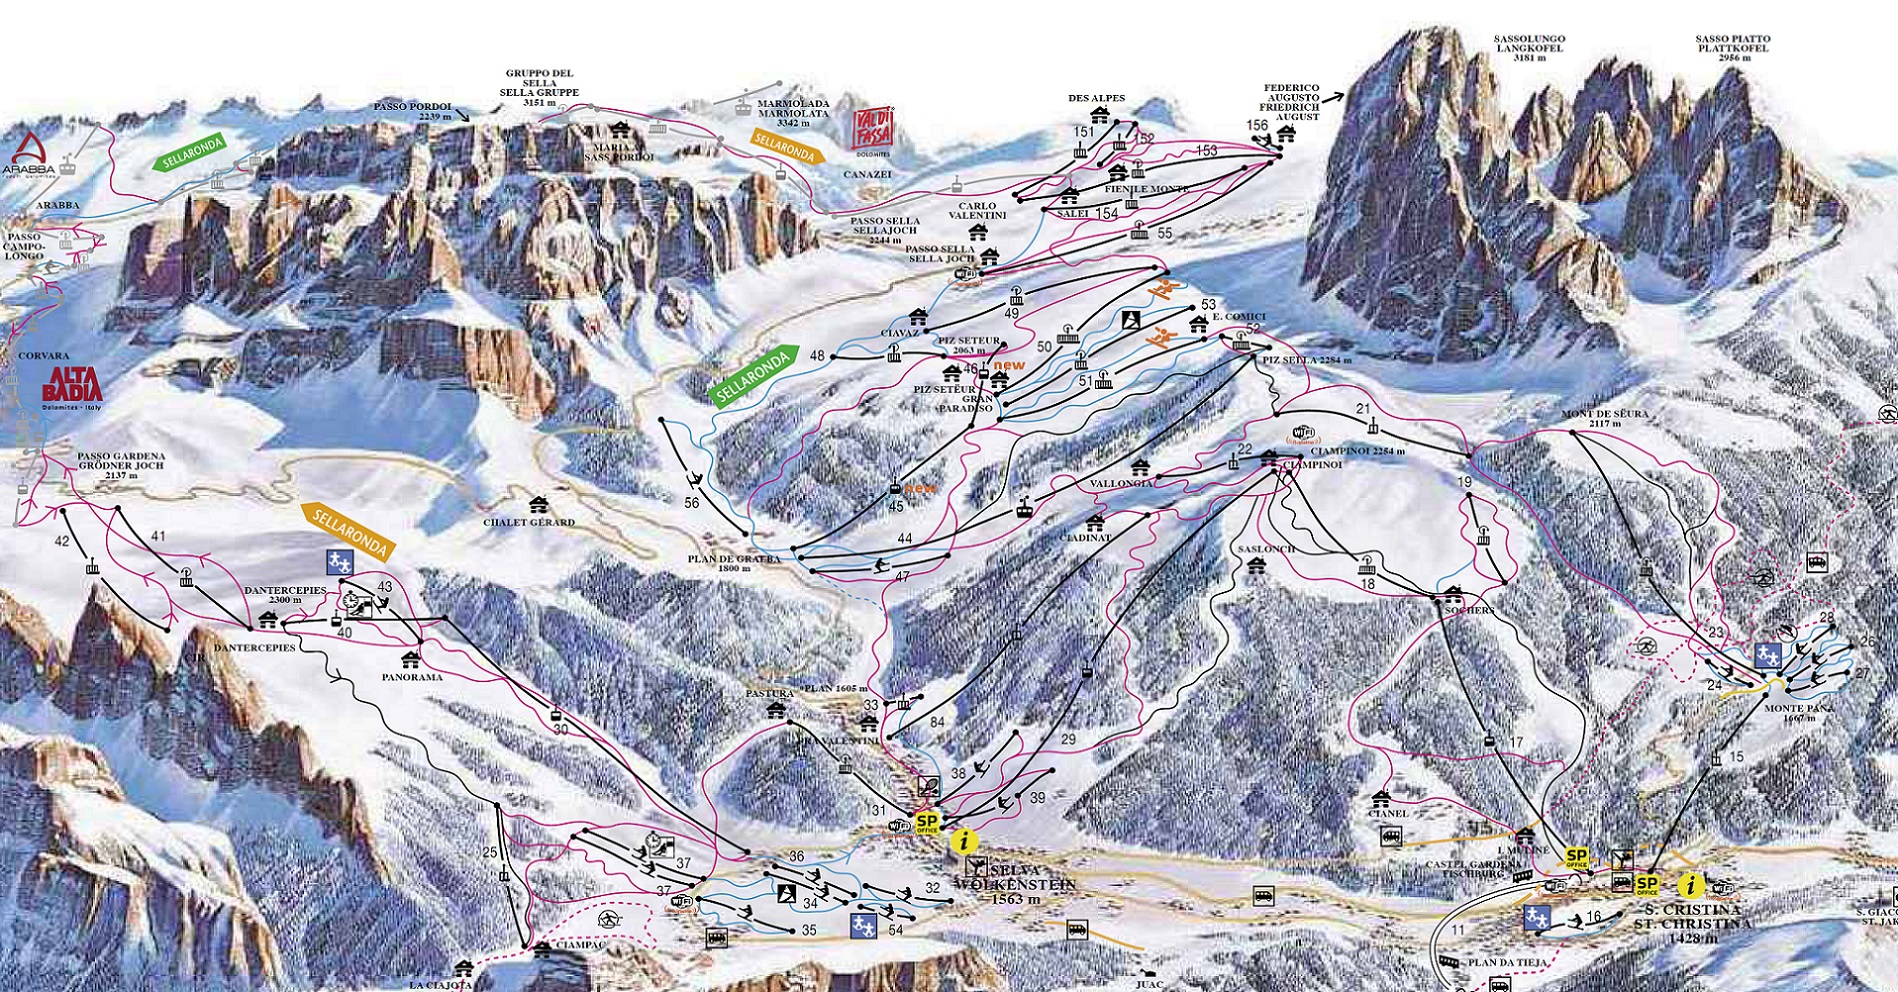 Val Gardena Ski Resort Info Guide Groeden, Alpe di Siusi Dolomites Italy Review